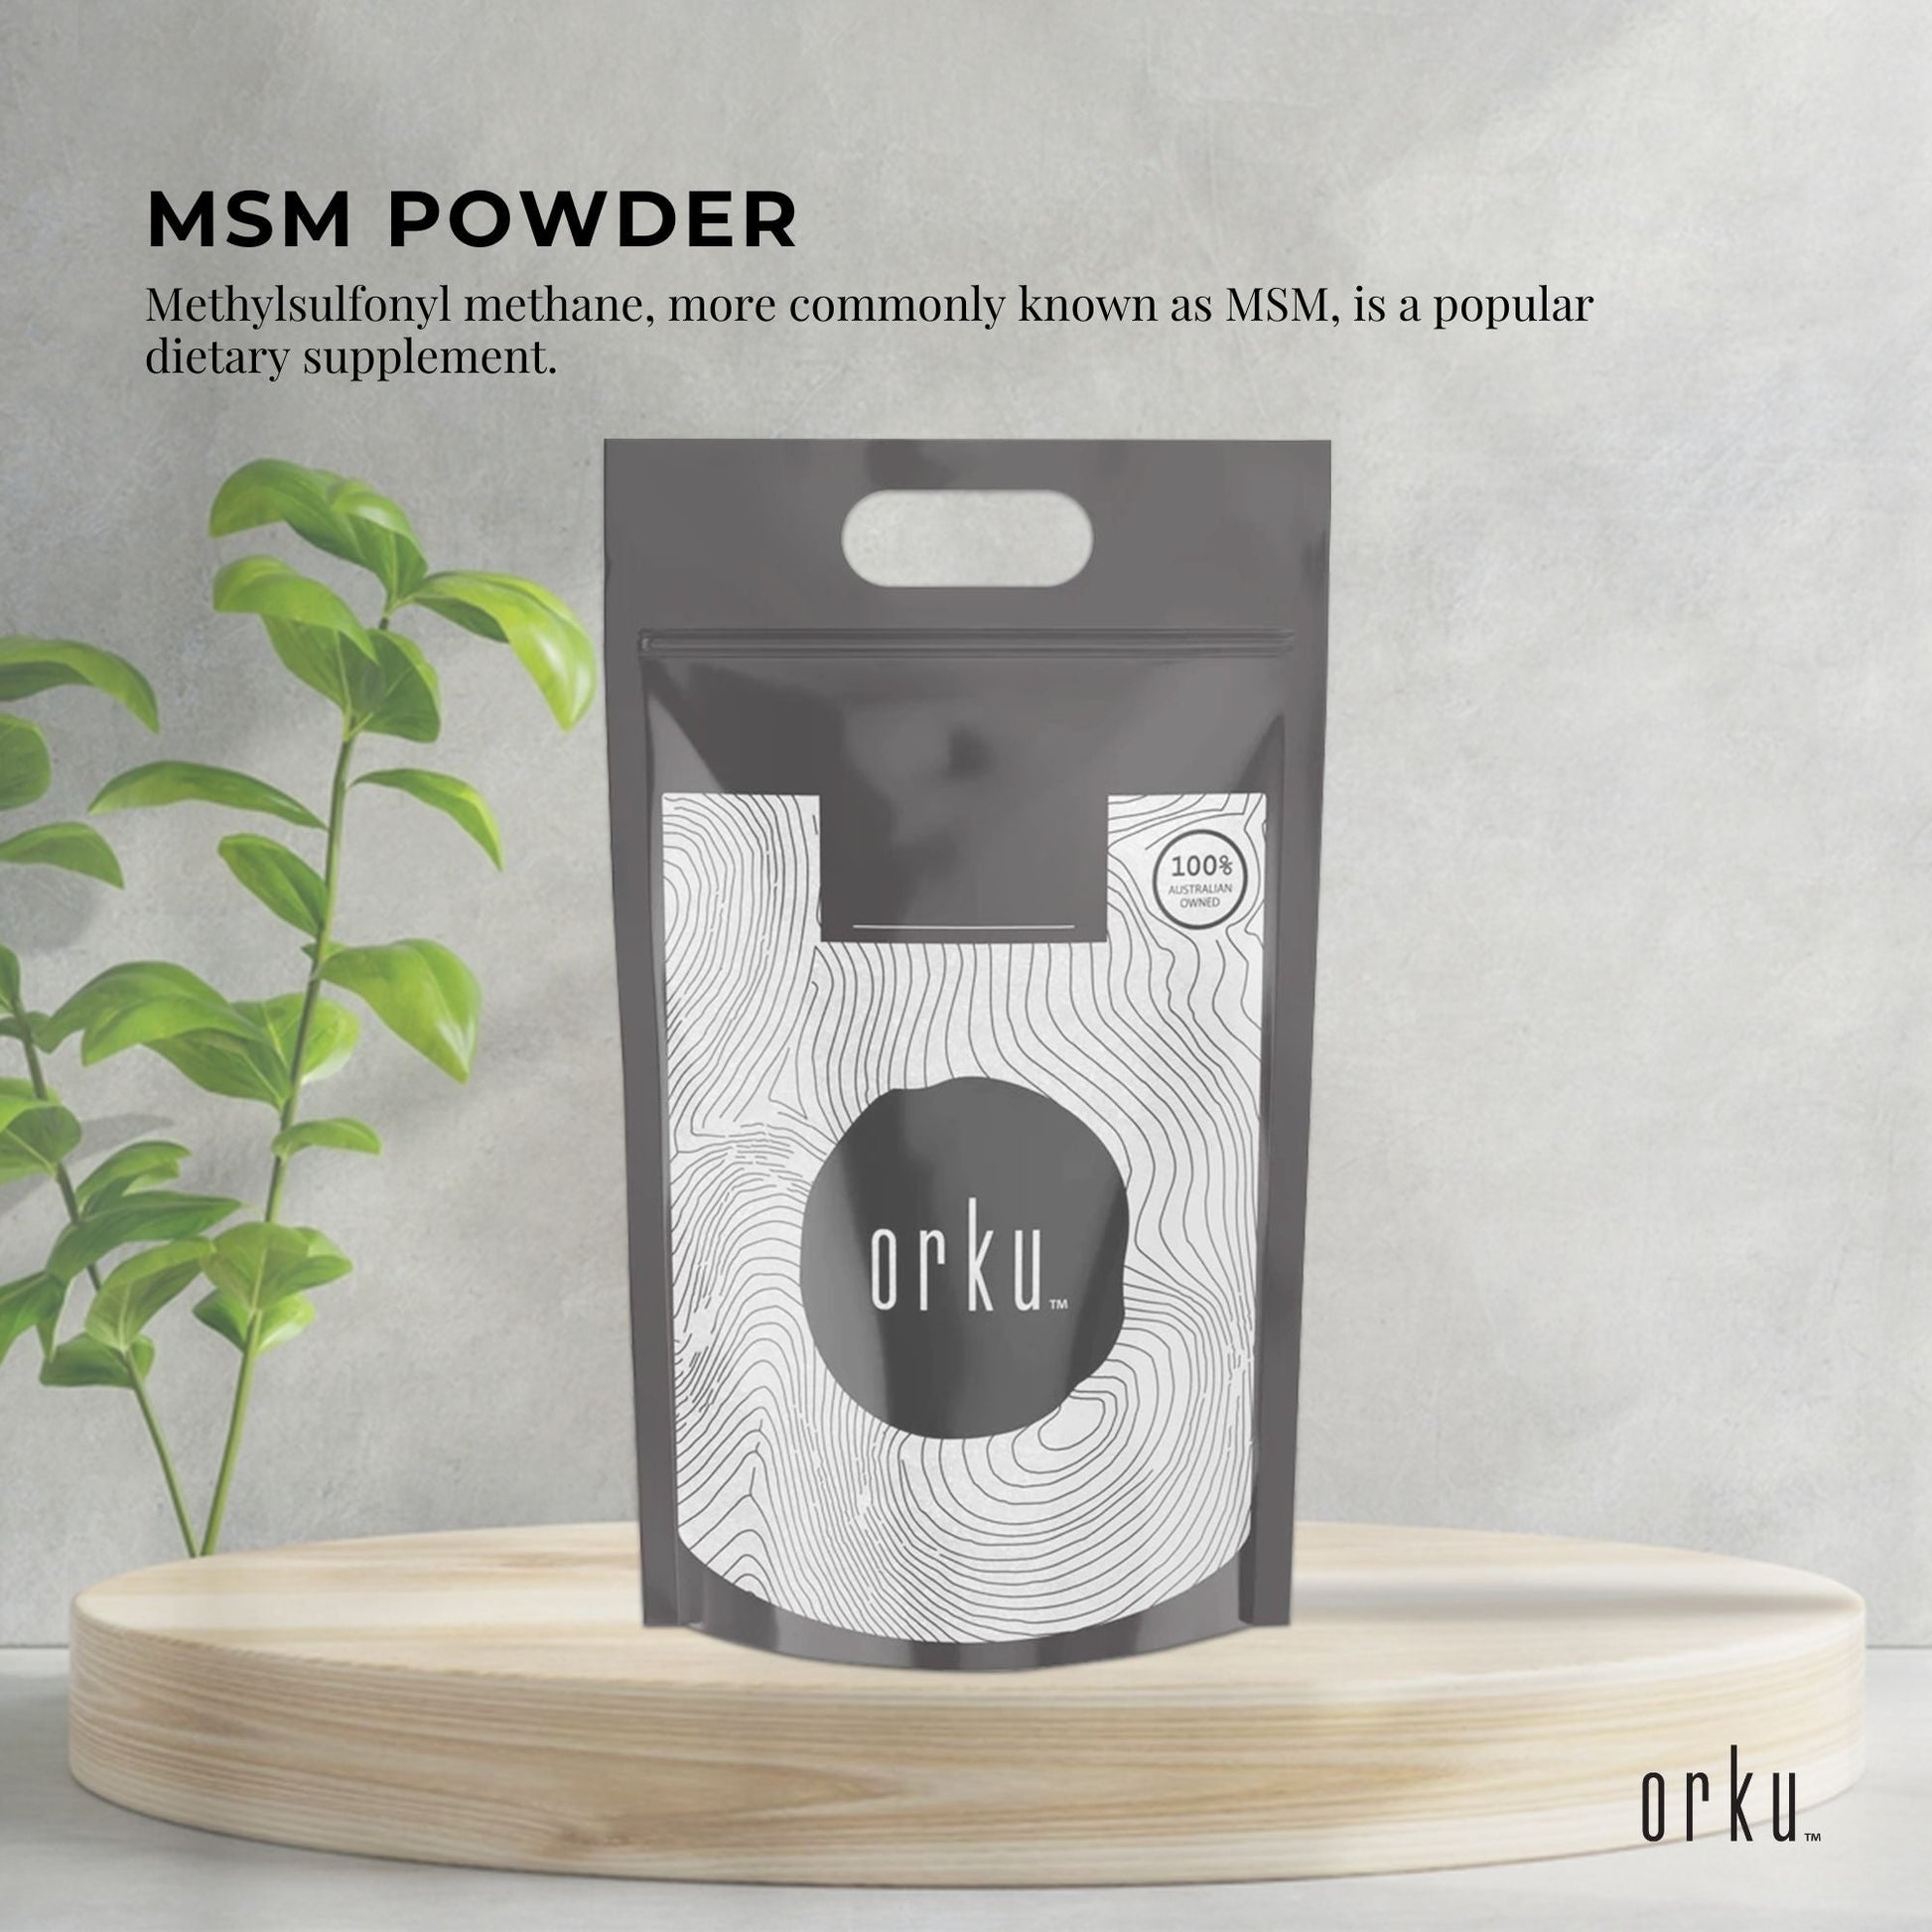 10Kg MSM Powder or Crystals Tub - 99% Pure Methylsulfonylmethane Dimethyl Sulfone